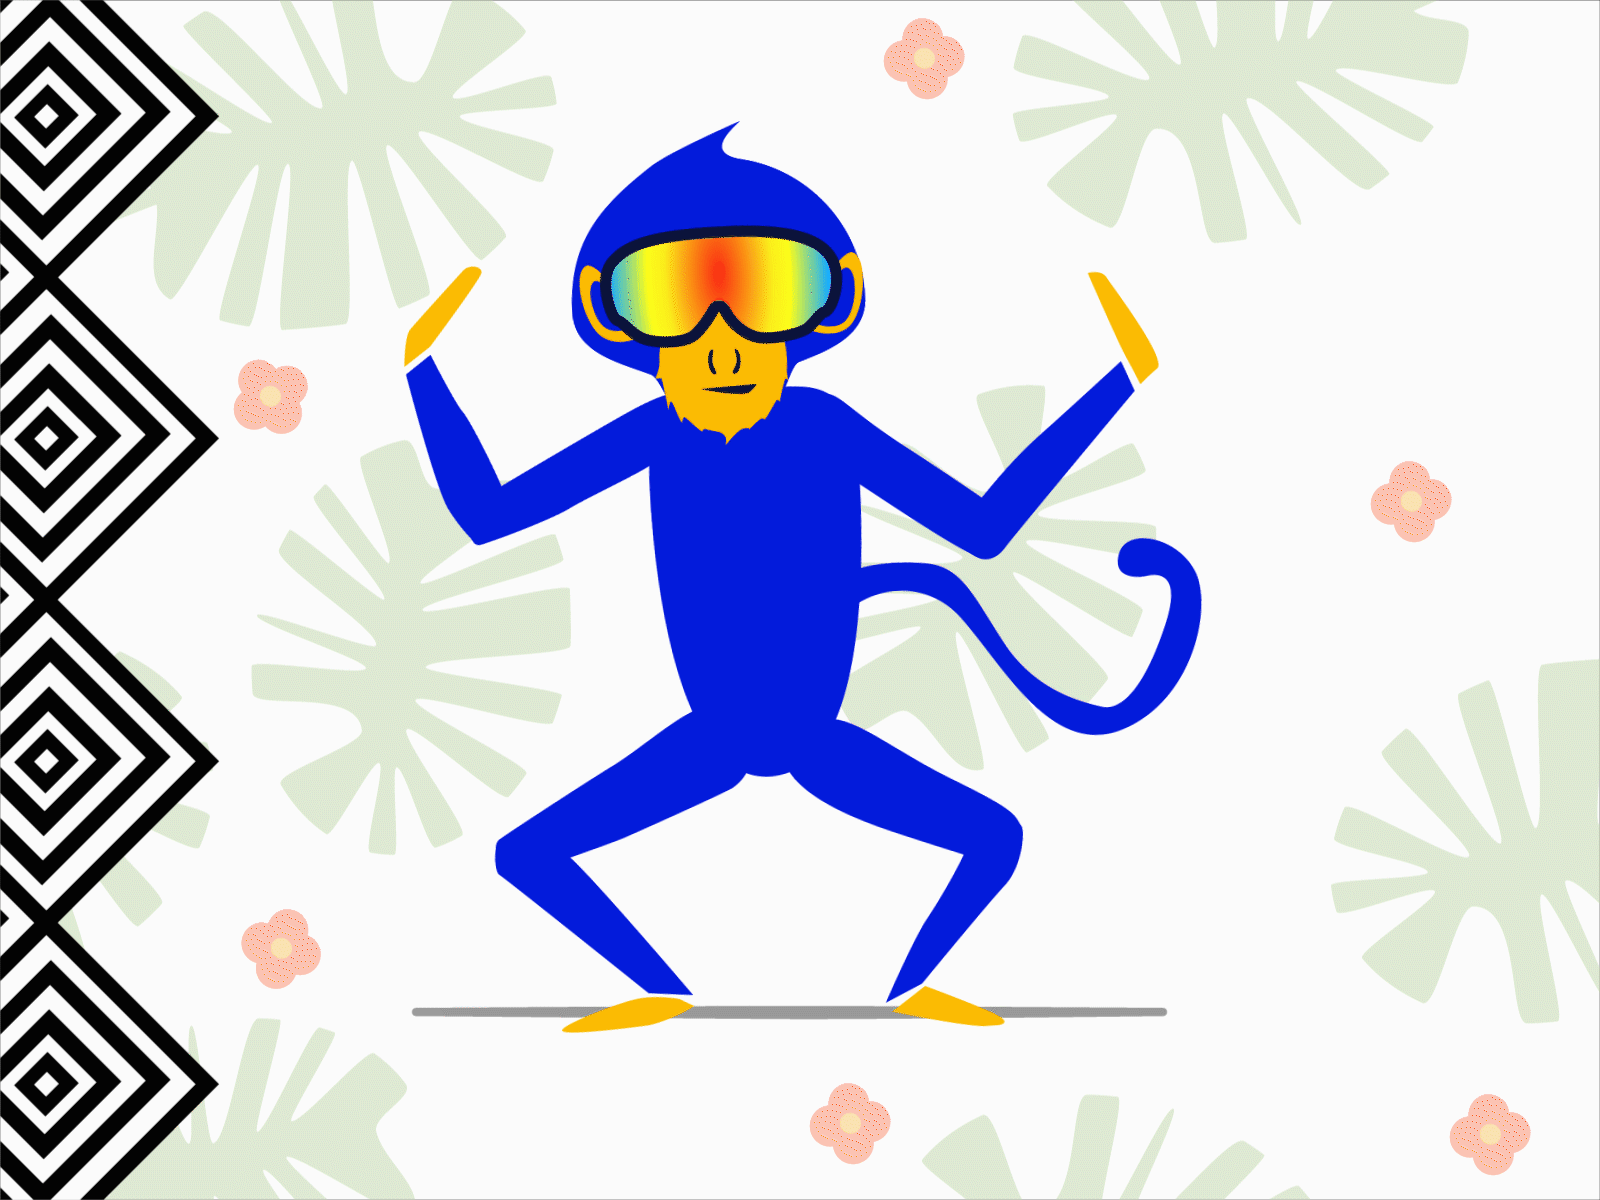 Dance Monkey 🐒 animated animation blue monkey